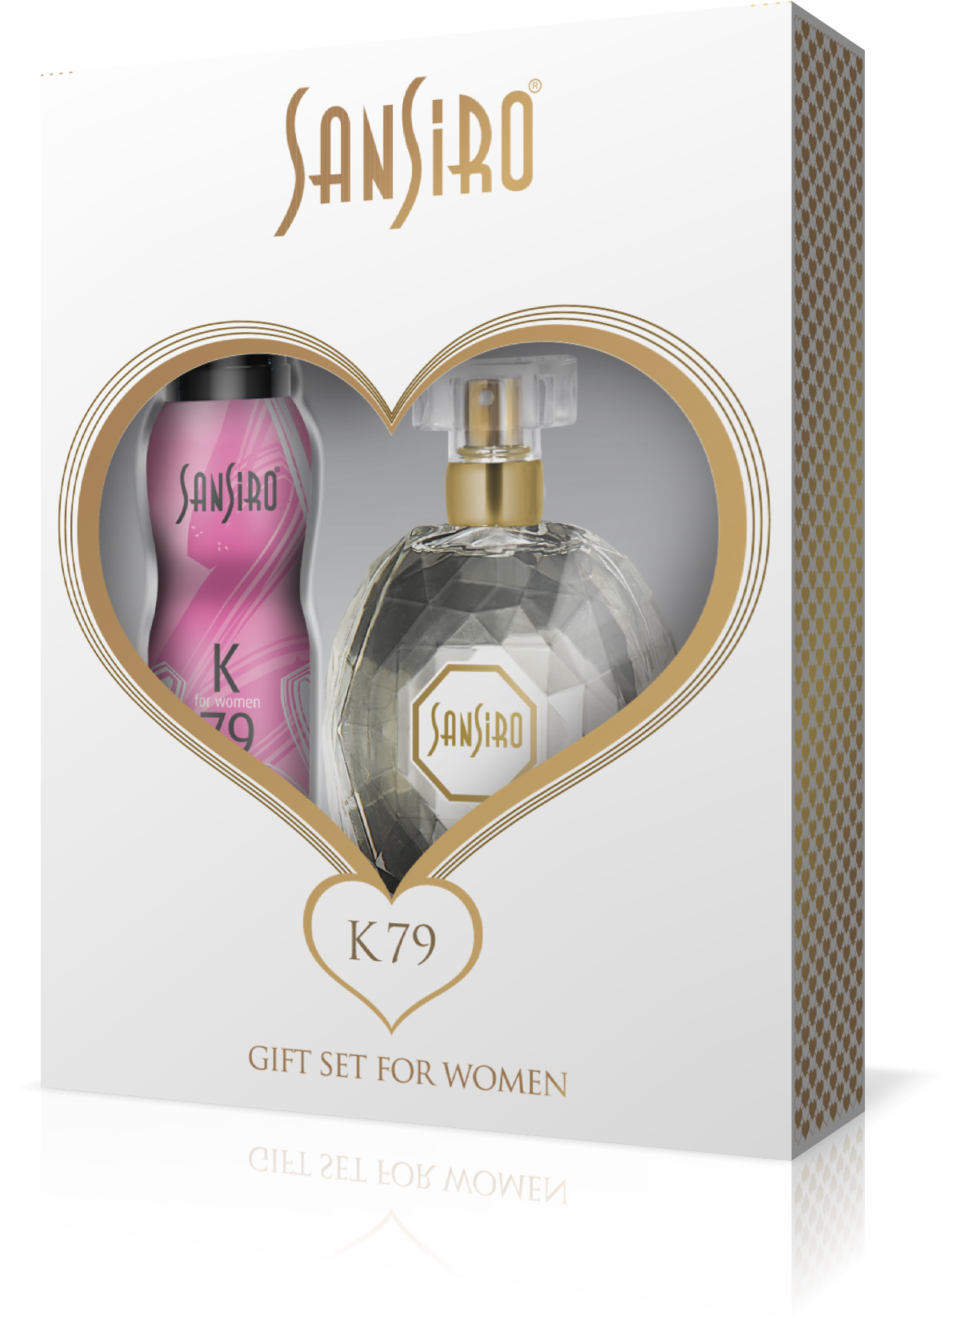 Sansiro Perfume - Gift Sets For Women - Geschenke Set K79